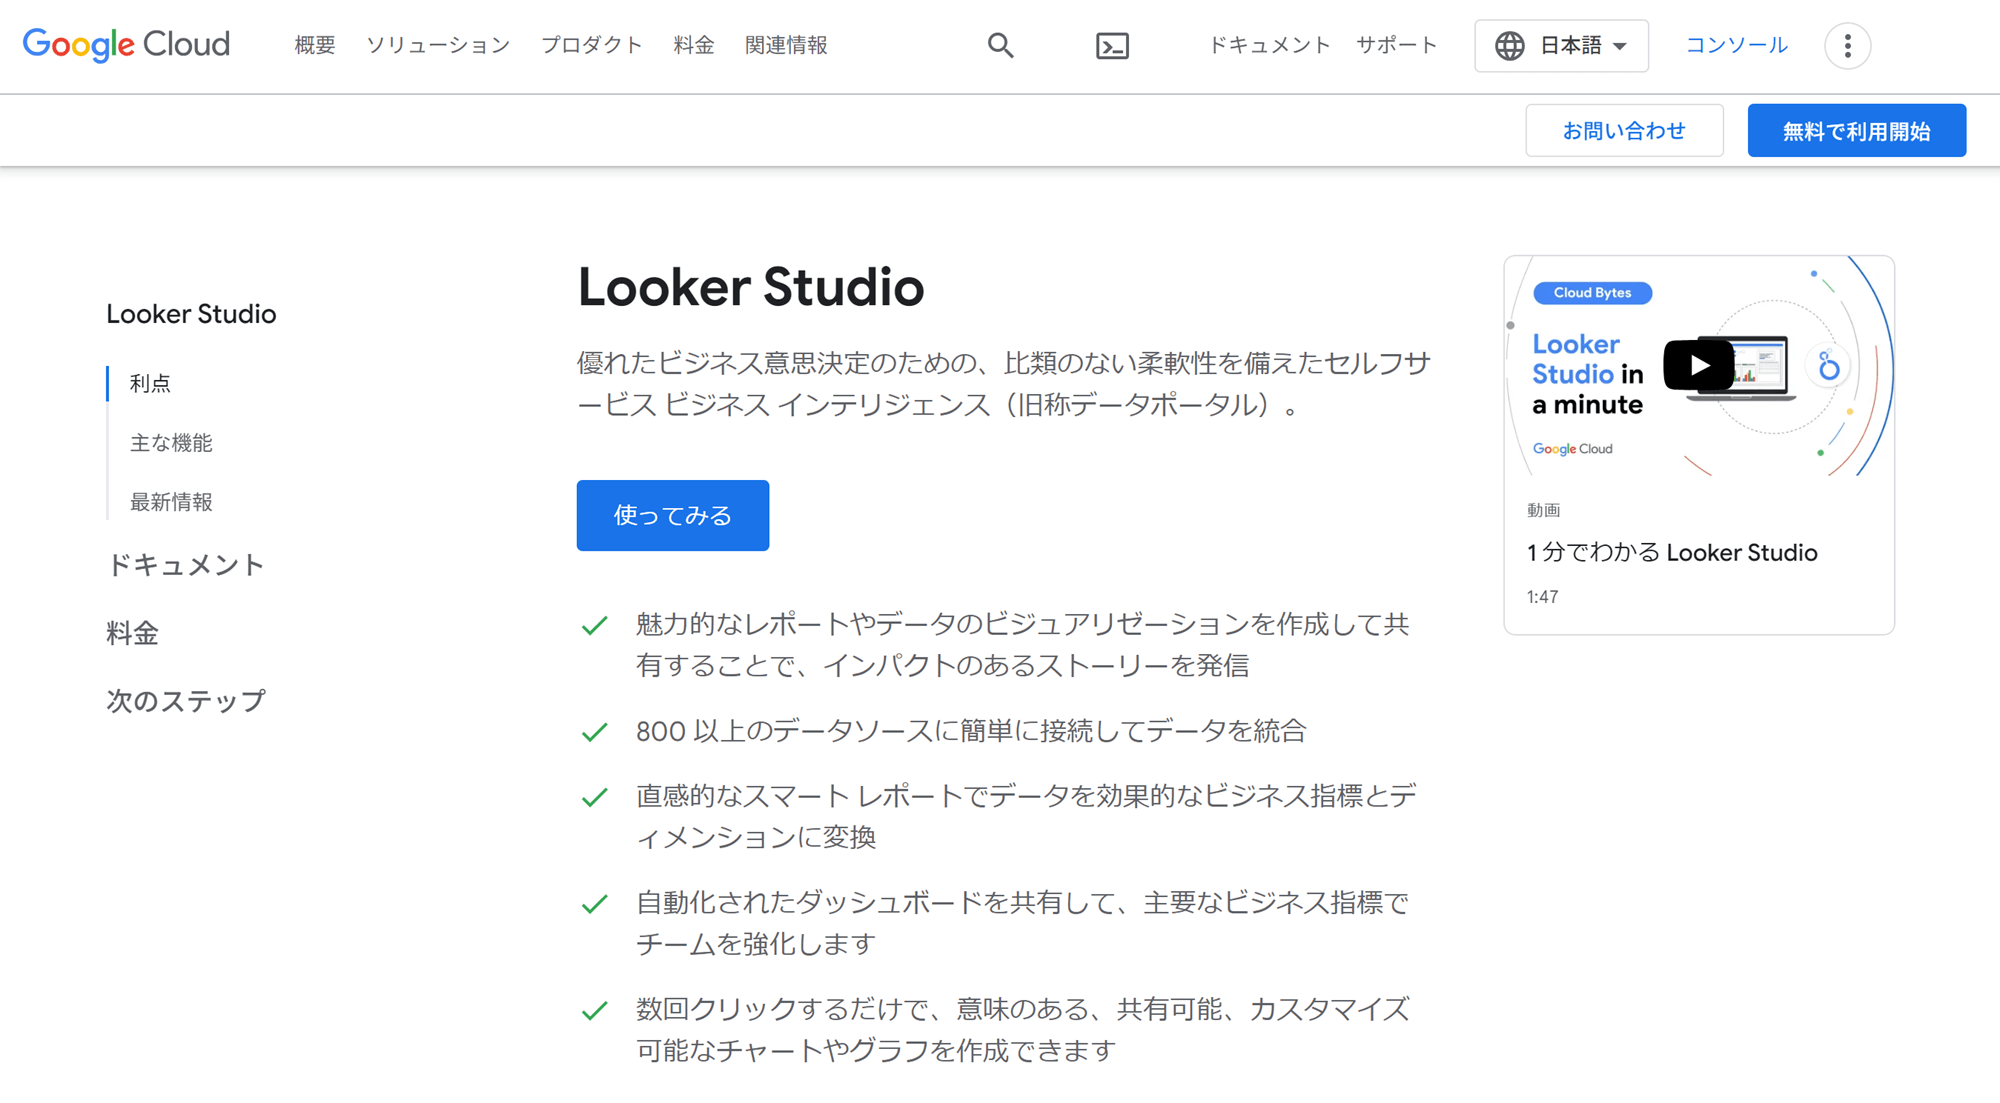 Looker Studio